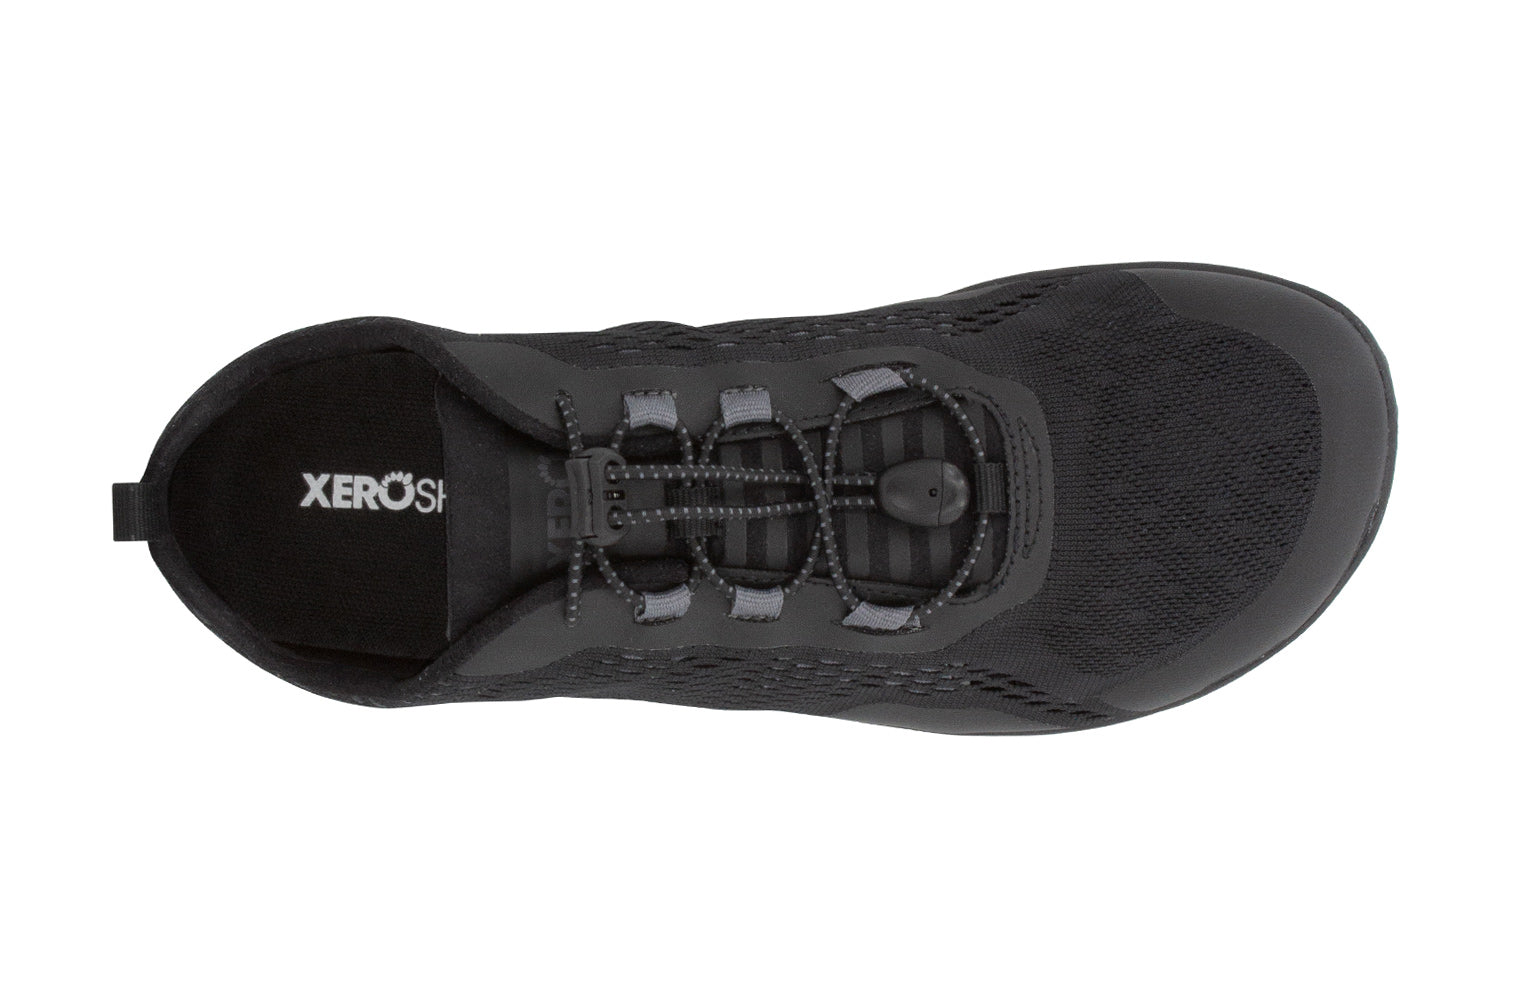 Xero Shoes Aqua X Sport barfods vand træningssko til mænd i farven black, top